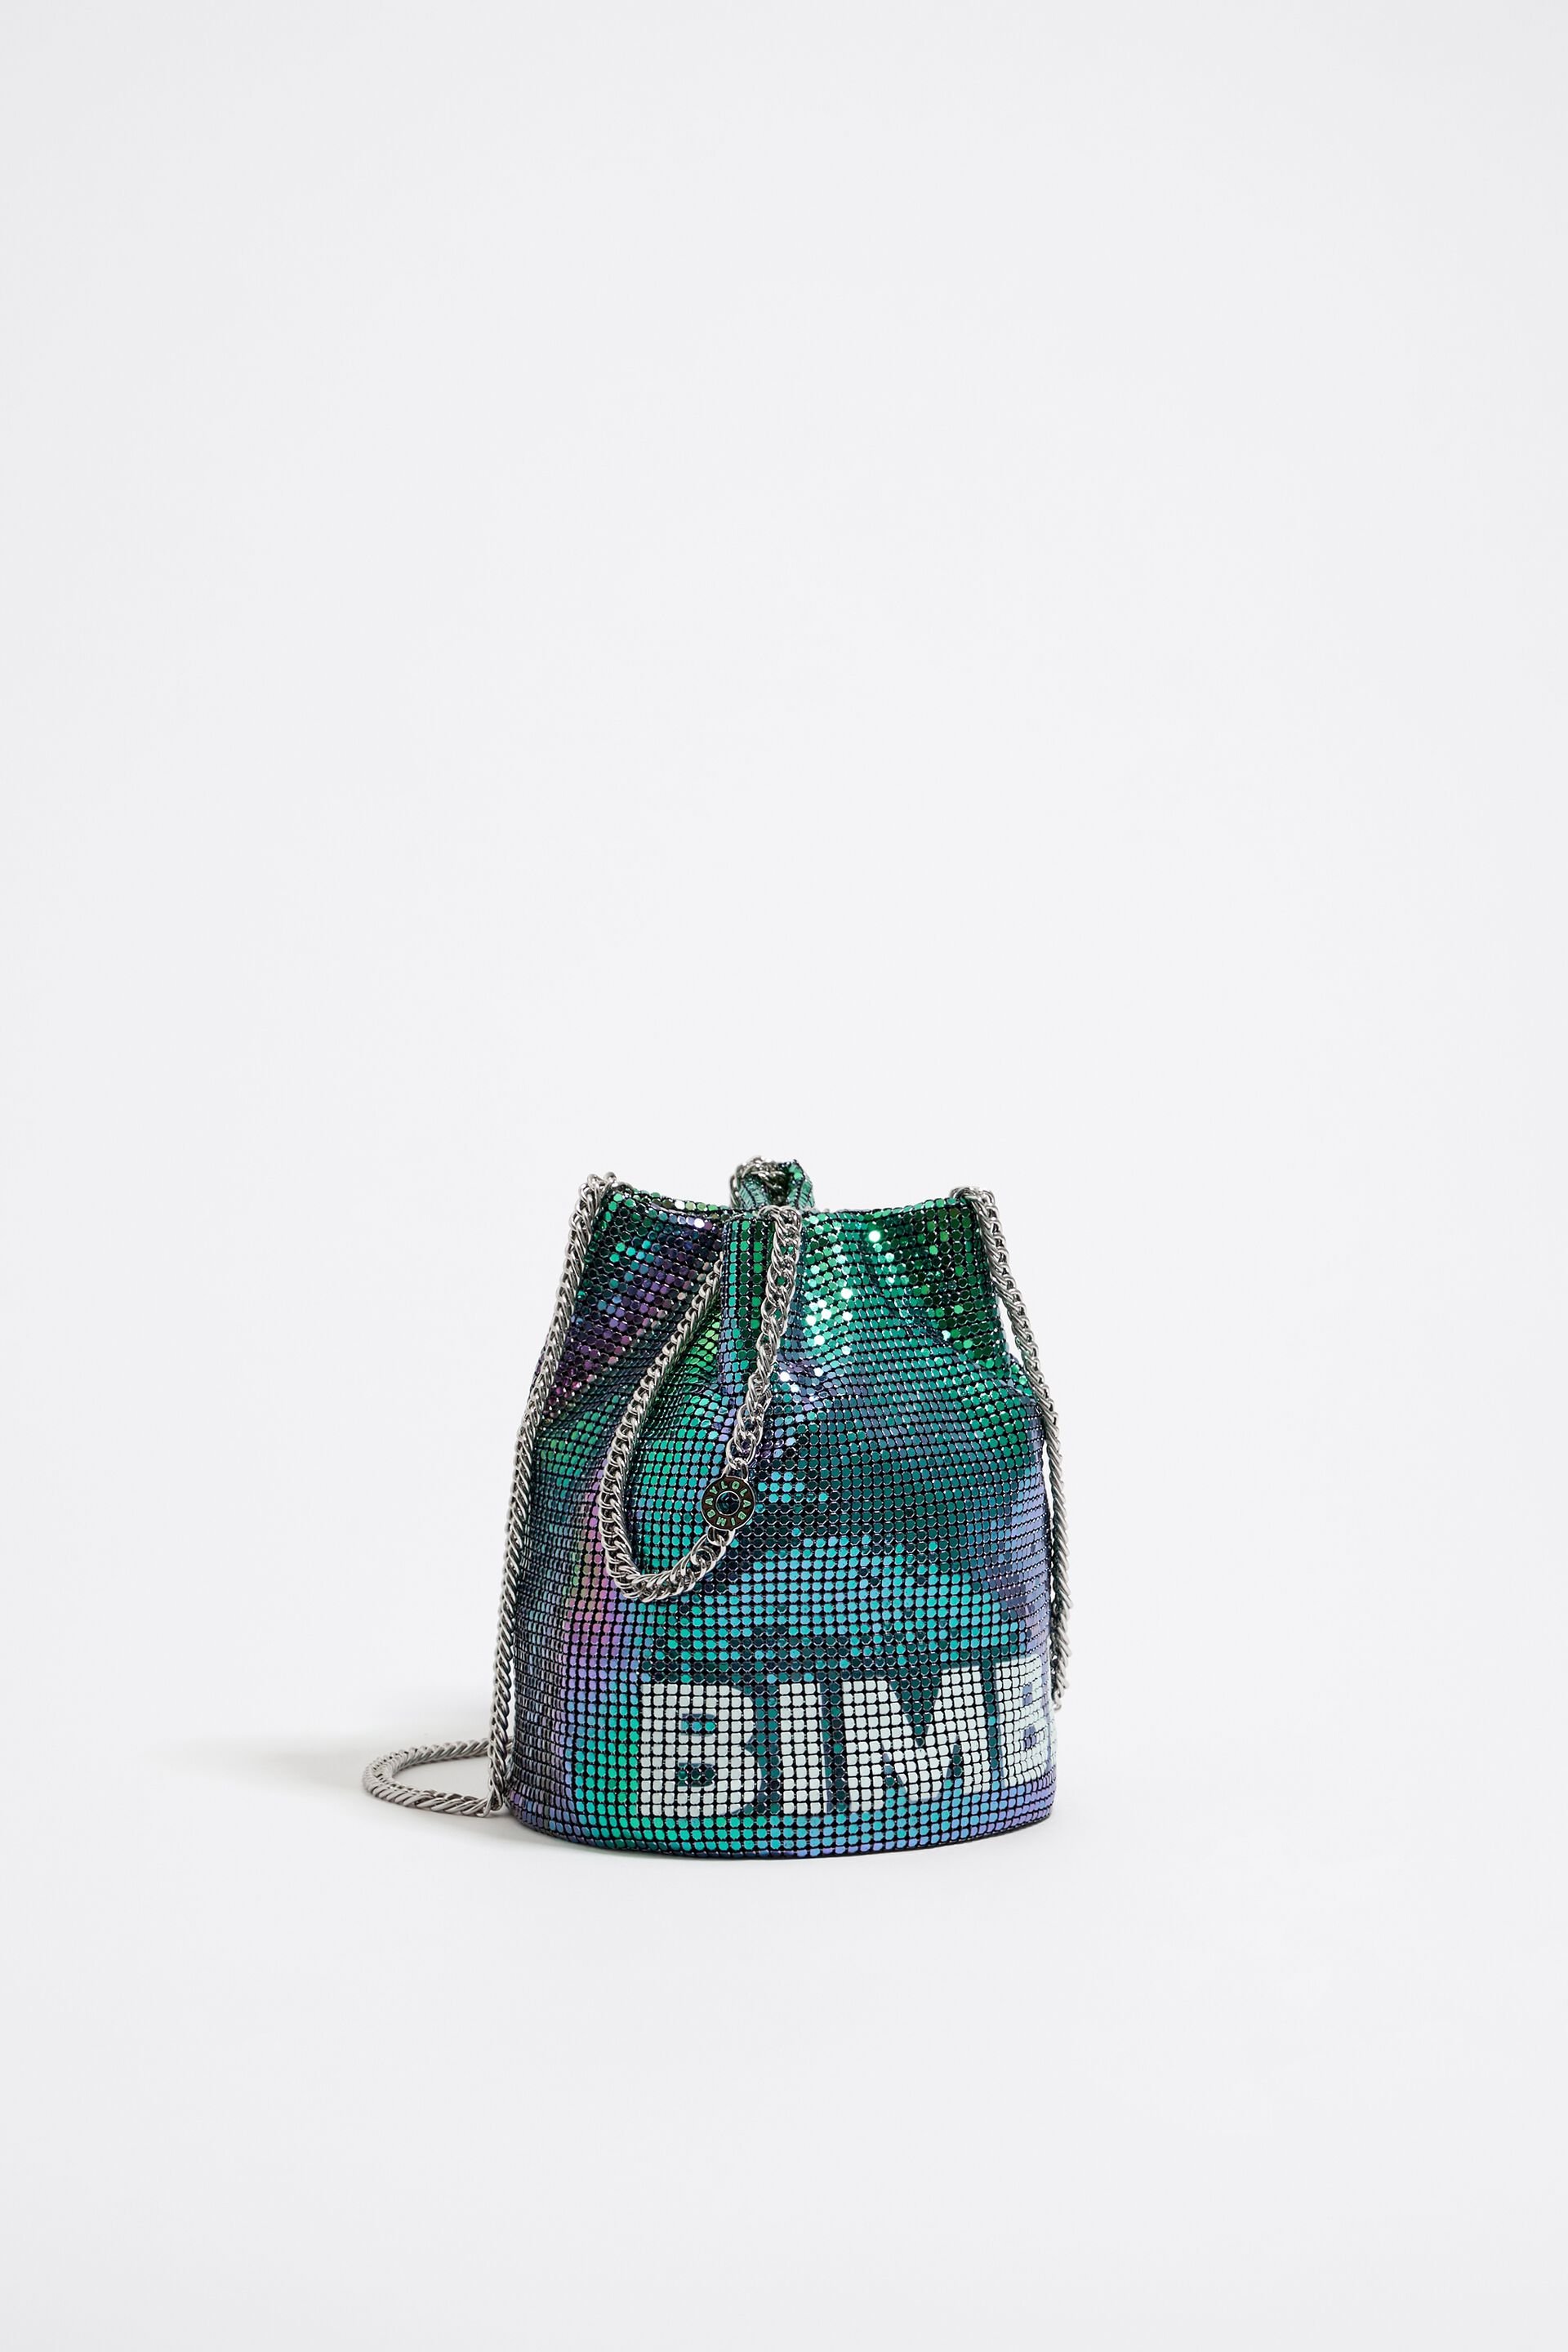 Bimba y Lola mesh-design Shoulder Bag - Farfetch